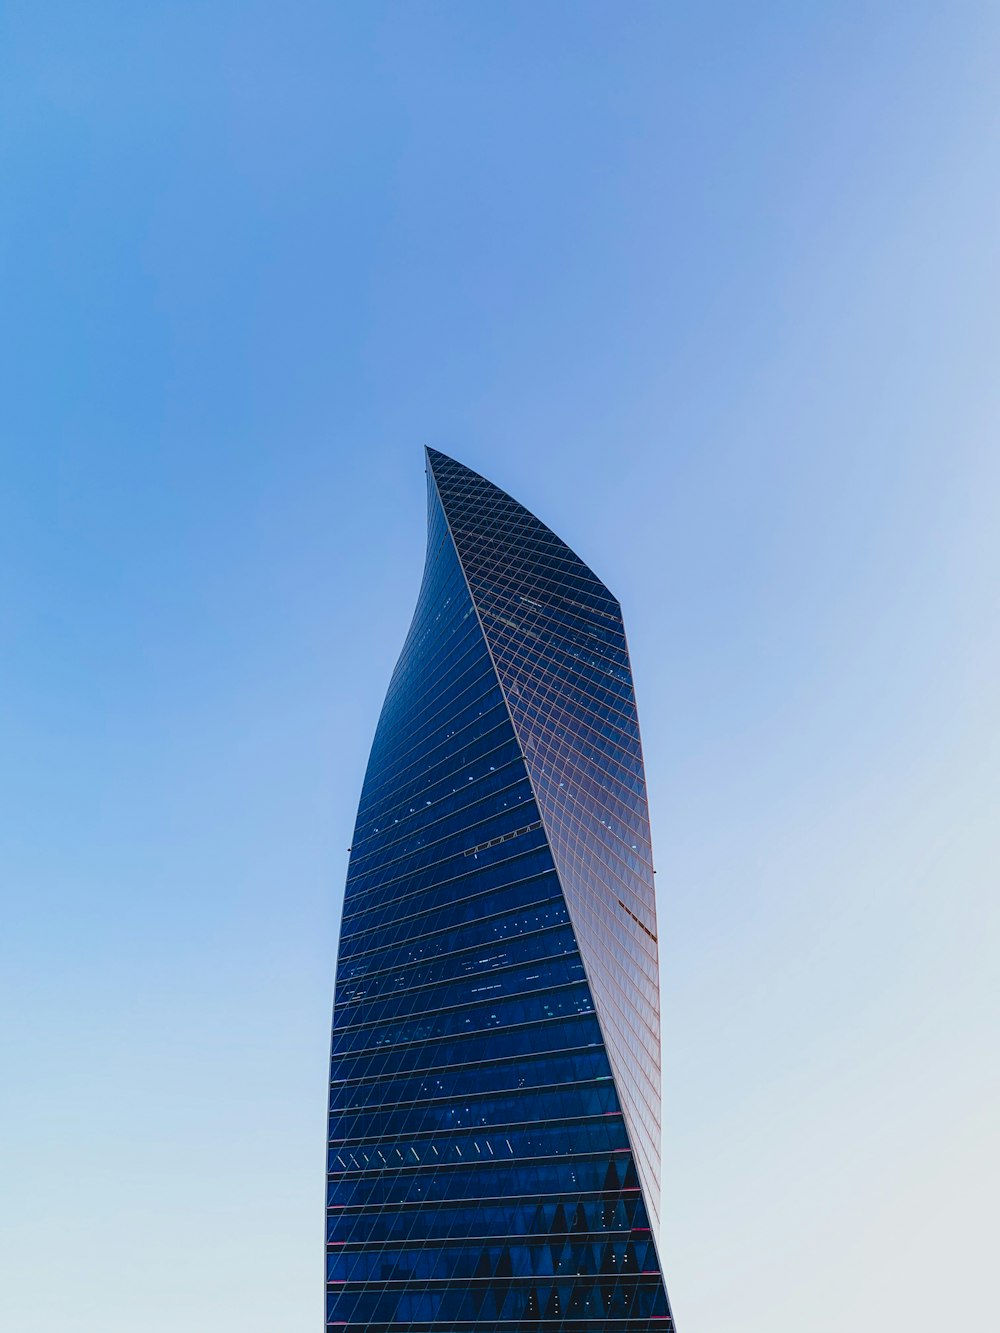 grattacieli neri e grigi sotto il cielo blu durante il giorno